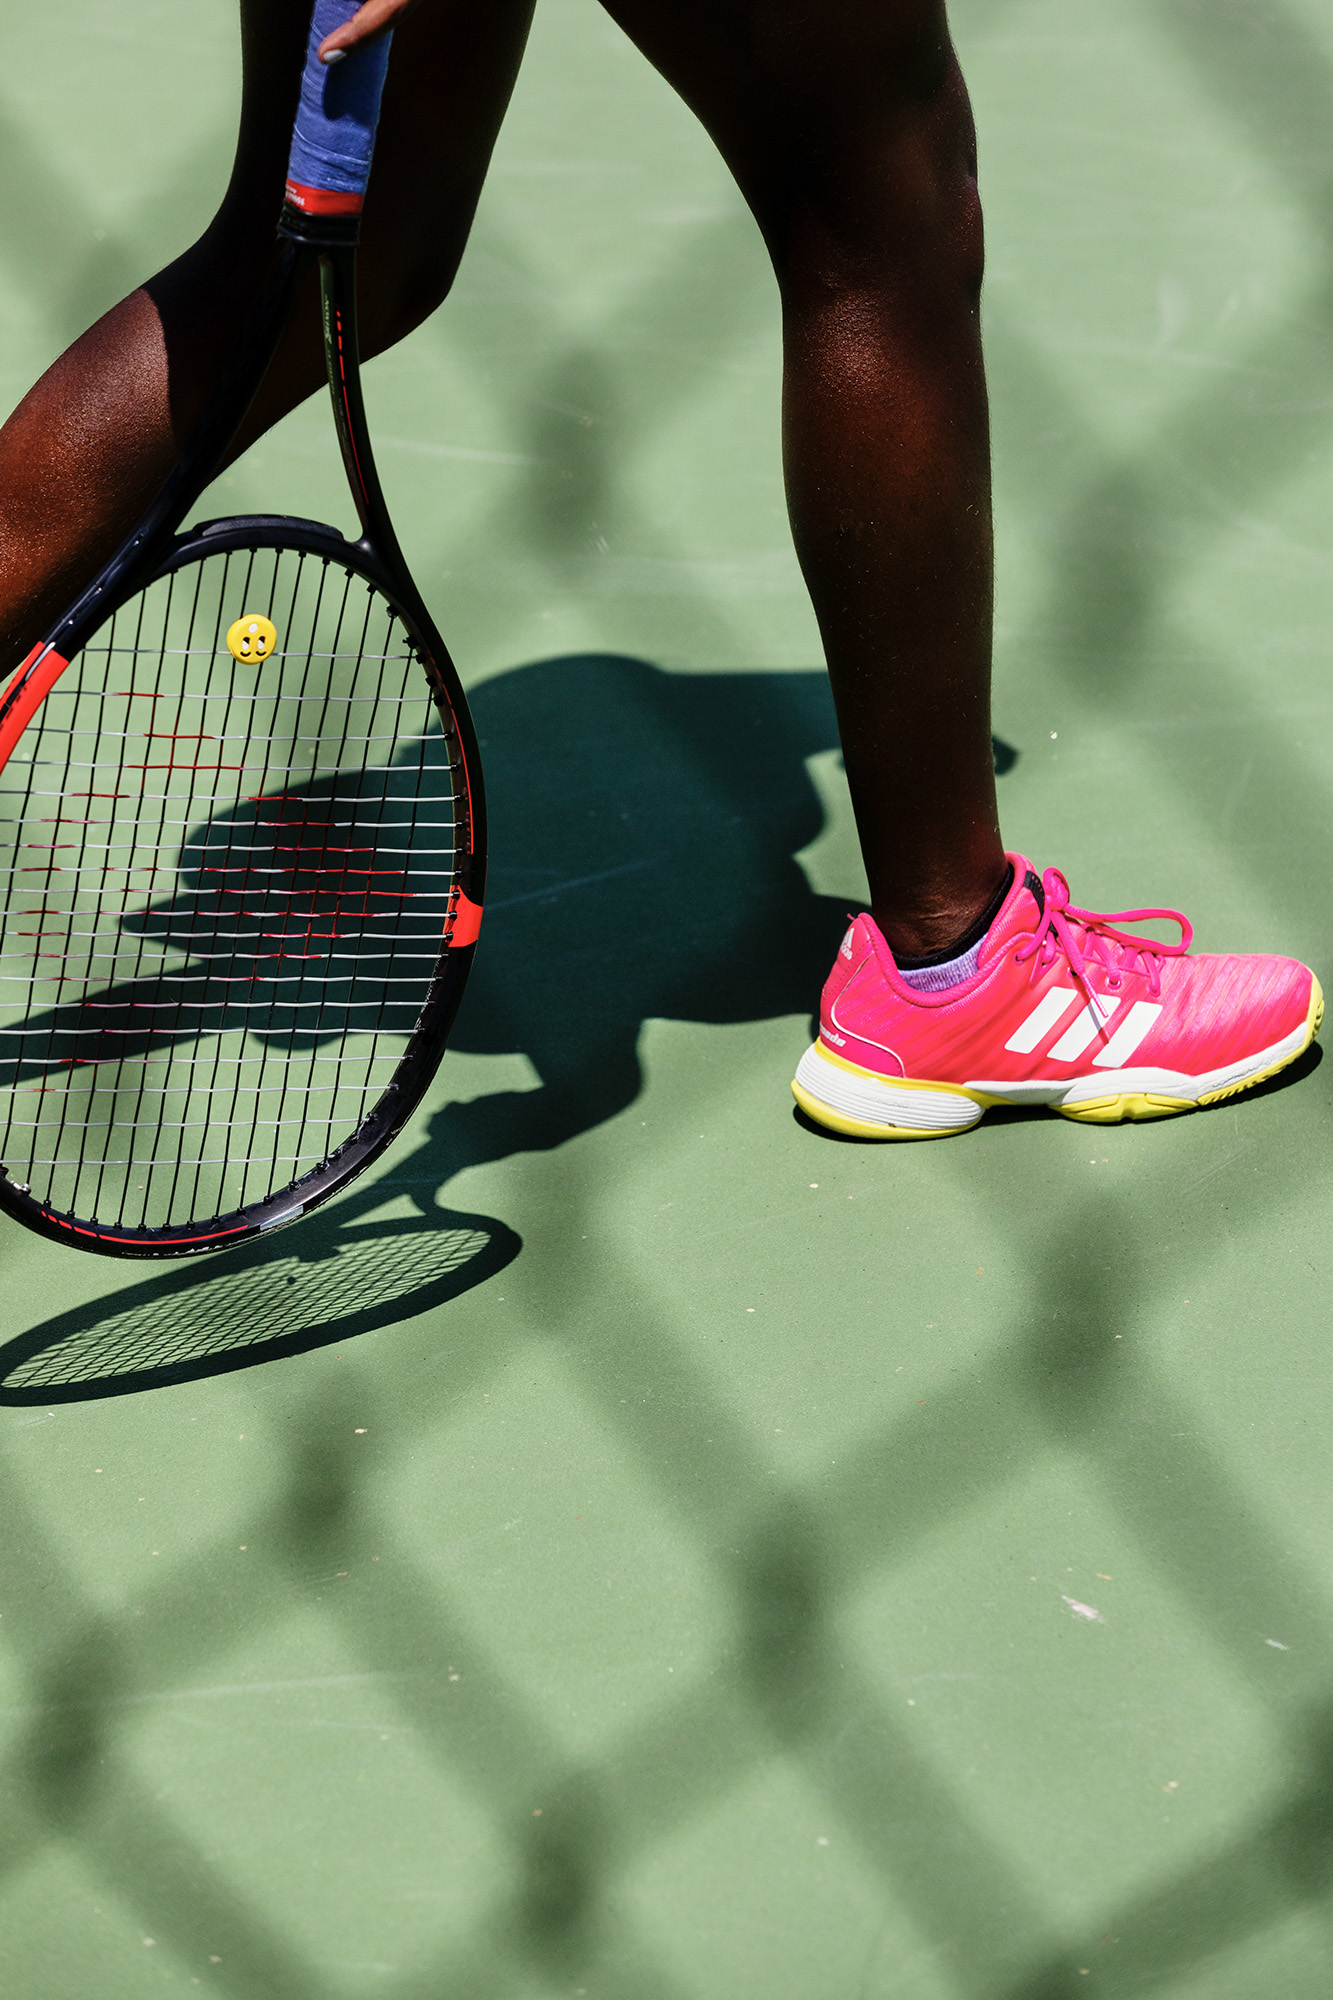 RY_adidas_tennis_SM-1